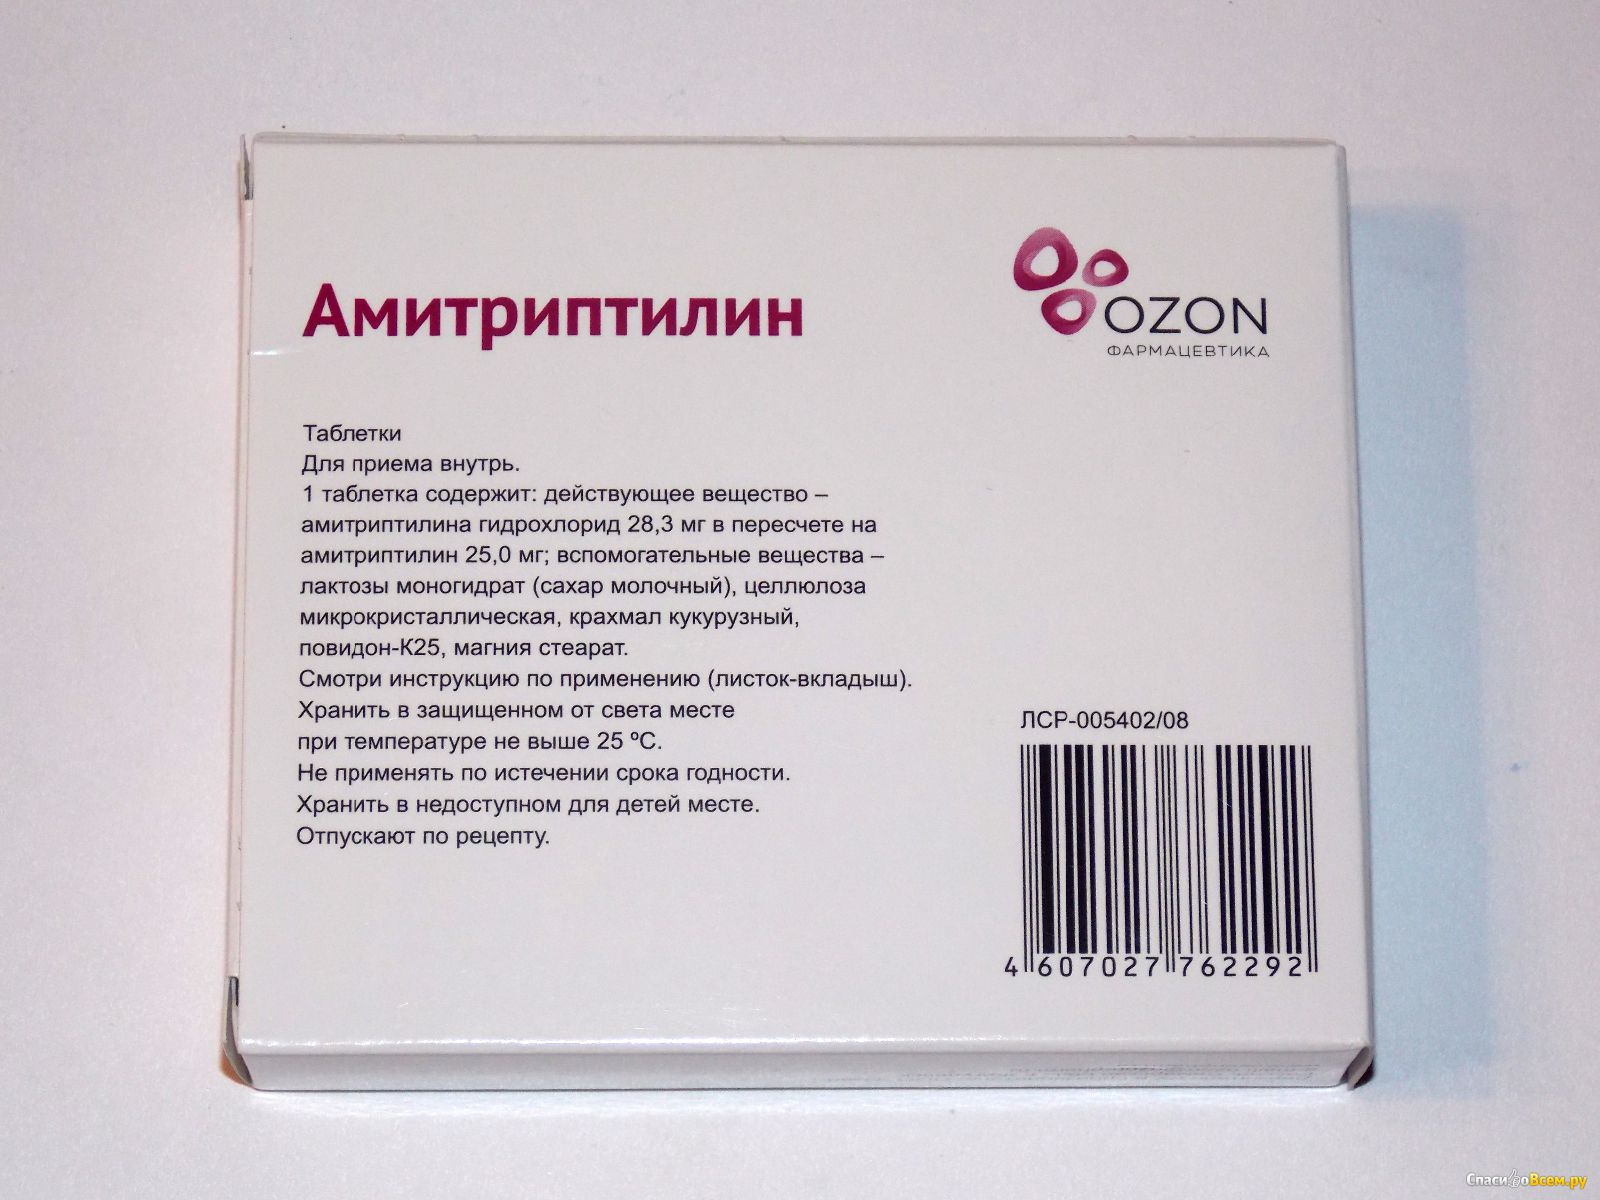 Амитриптилин таблетки отзывы пациентов принимавших. Амитриптилин 25 мг Озон. Амитриптилин Озон. Амитриптилин таблетки Озон. Амитриптилин таблетки 25 мг.